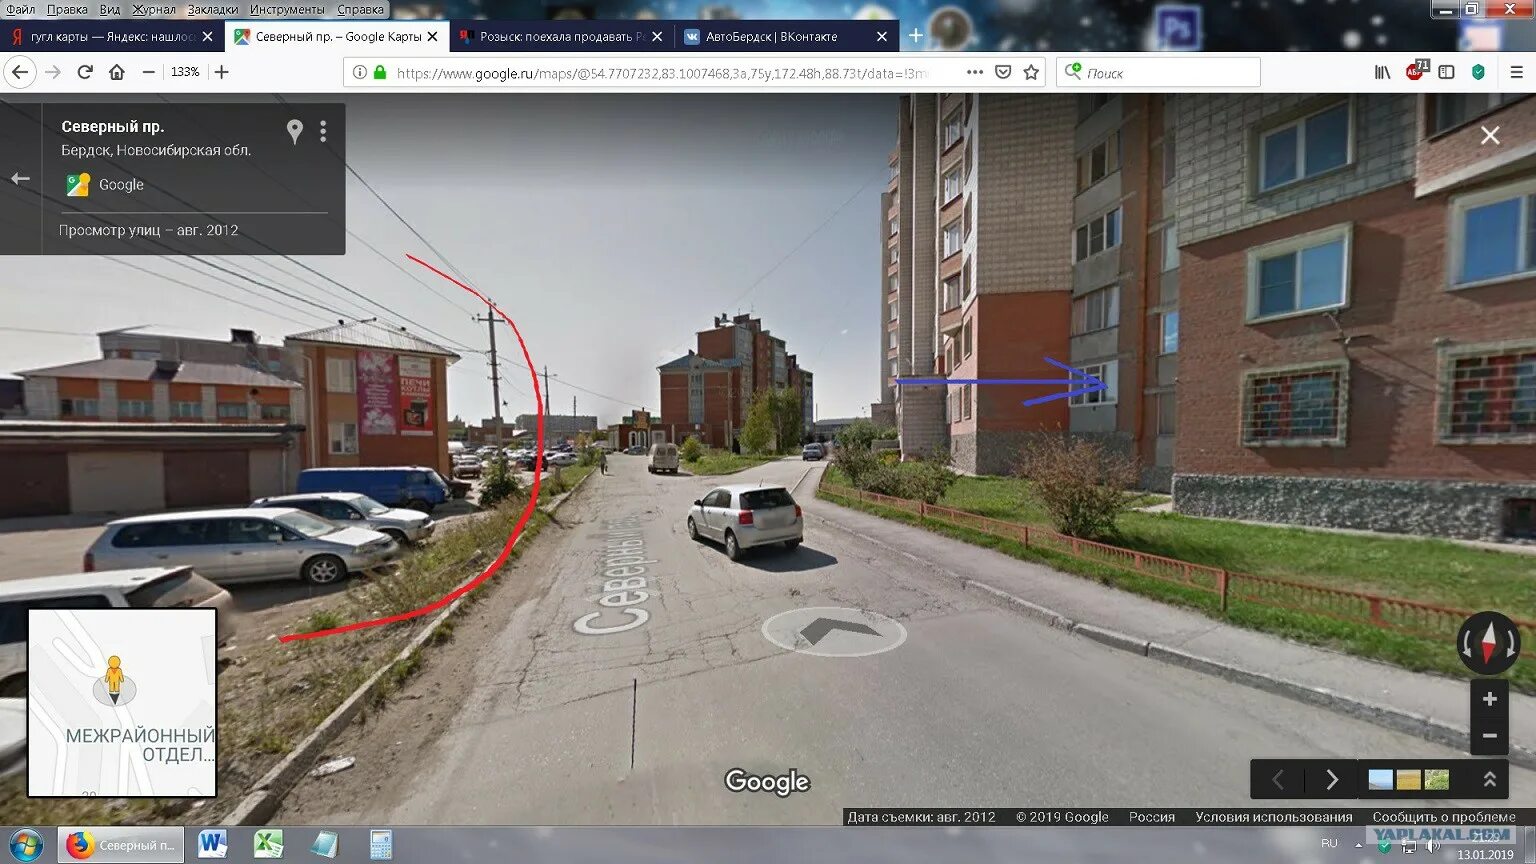 Гугл карты человечек ходить по улице. Карты 3д гугл по улицам. Гугл карты 3д прогулка. Гугл карты улицы.